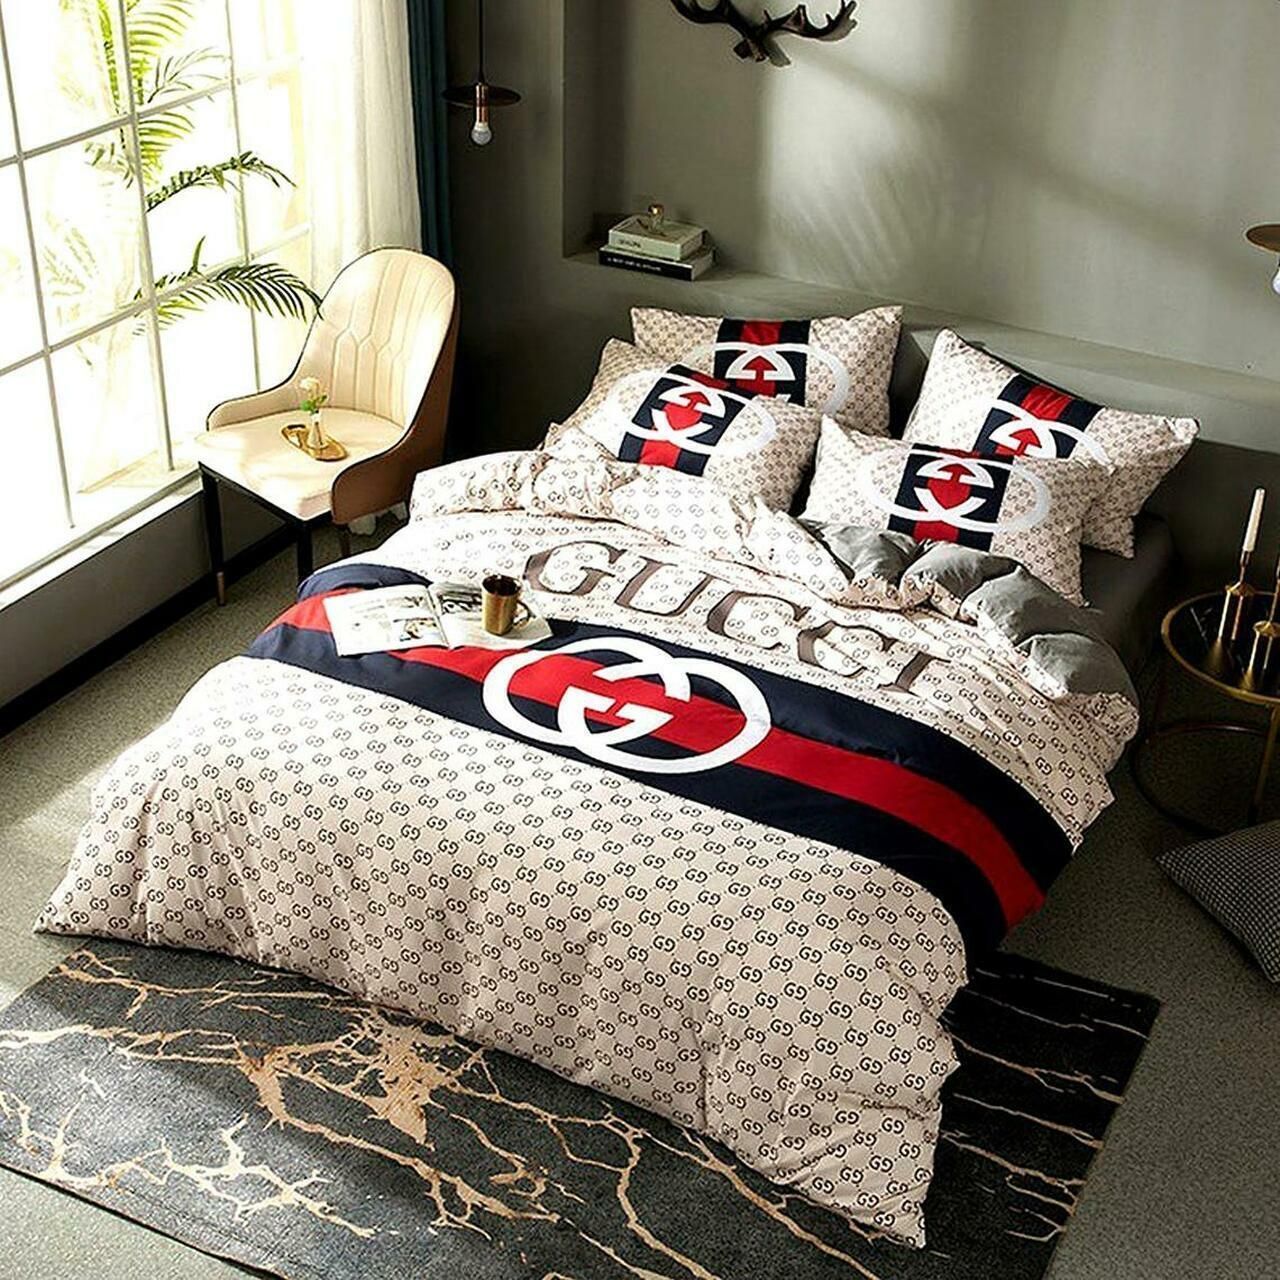 GC Stripe Luxury Brand High-End Bedding Set Home Decor HT Mia05